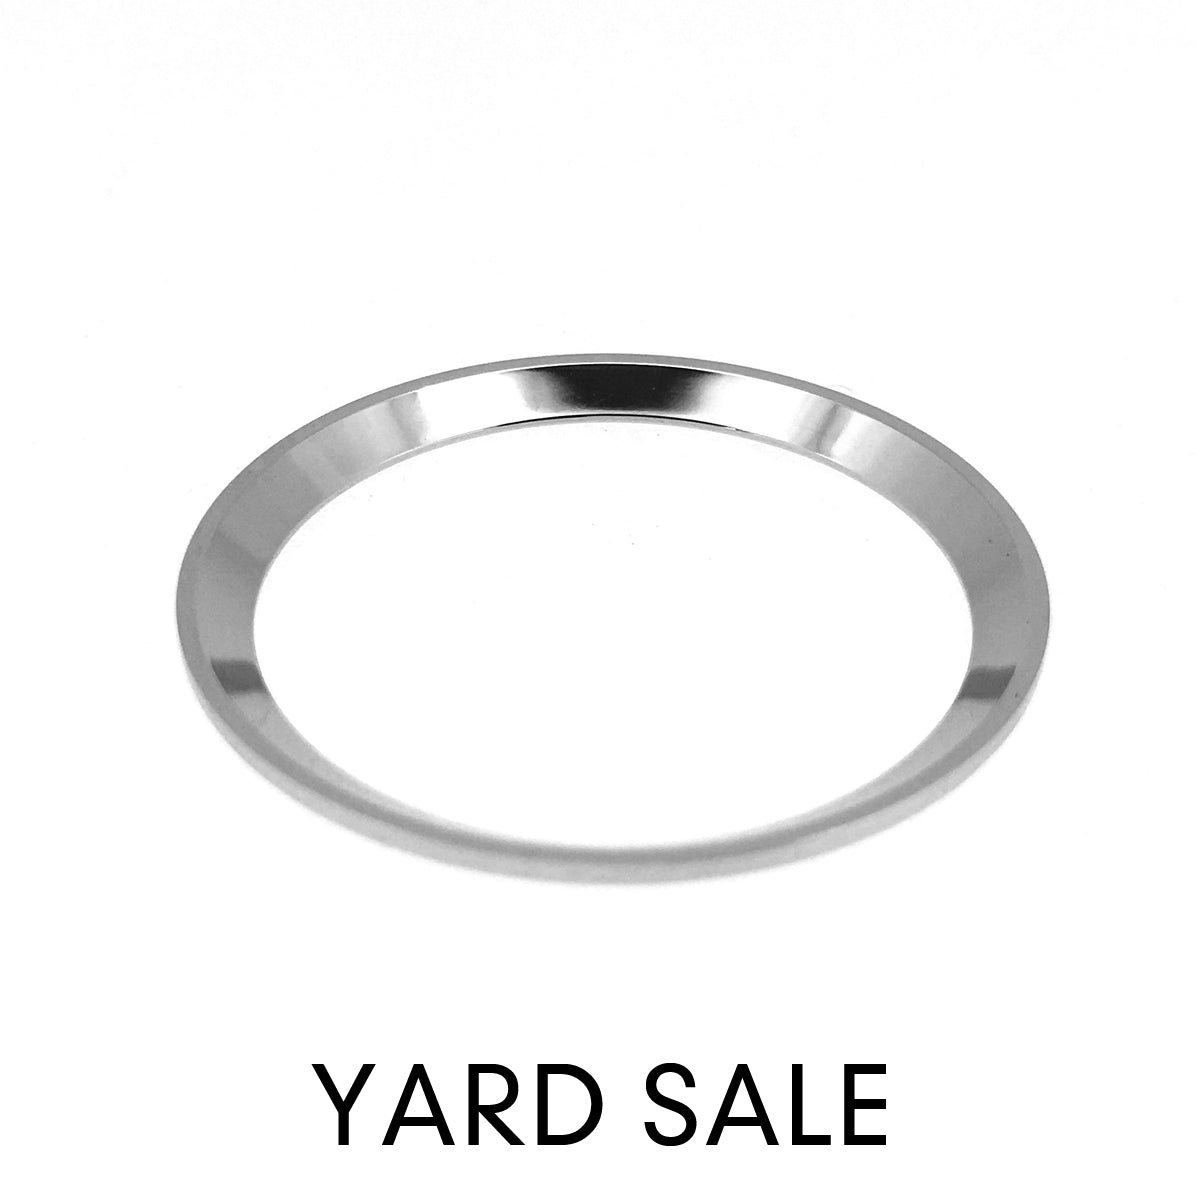 YARD SALE - C.R. - Urchin - Polished Silver